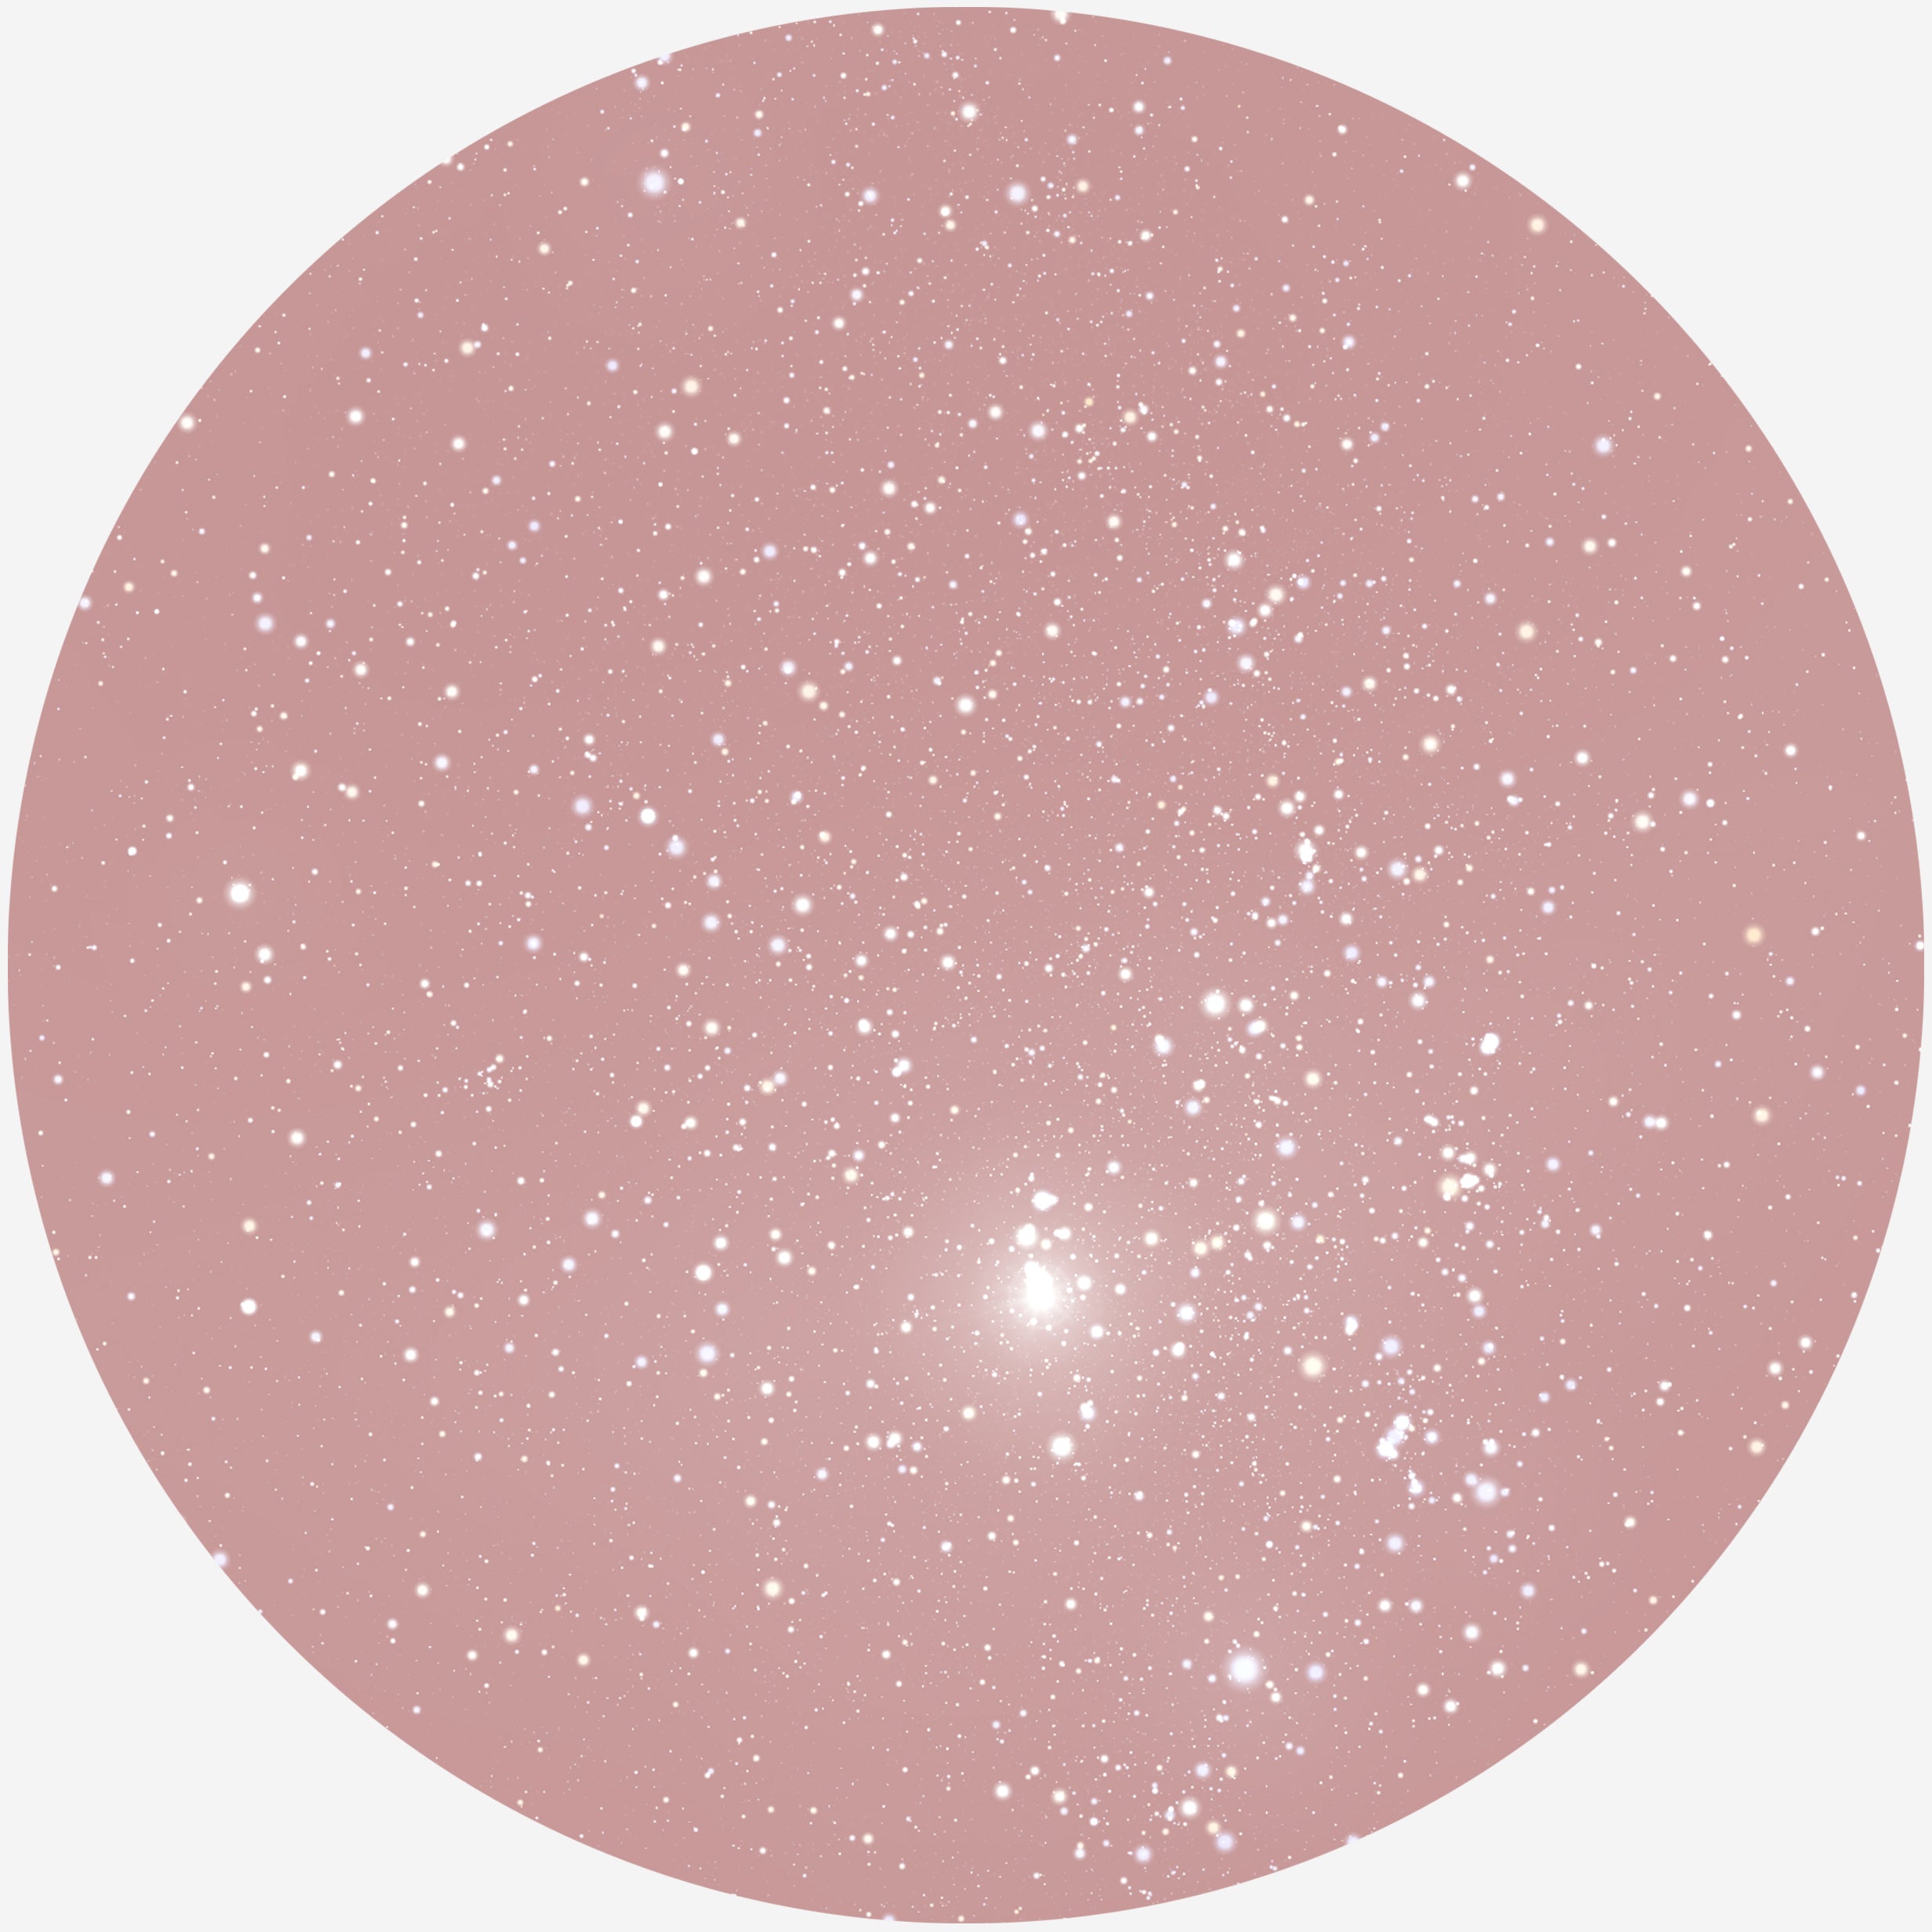 Billede af RUND PLAKAT MED PERSONLIG STJERNEHIMMEL (BLUSH)) - 20 cm / Klar stjernehimmel